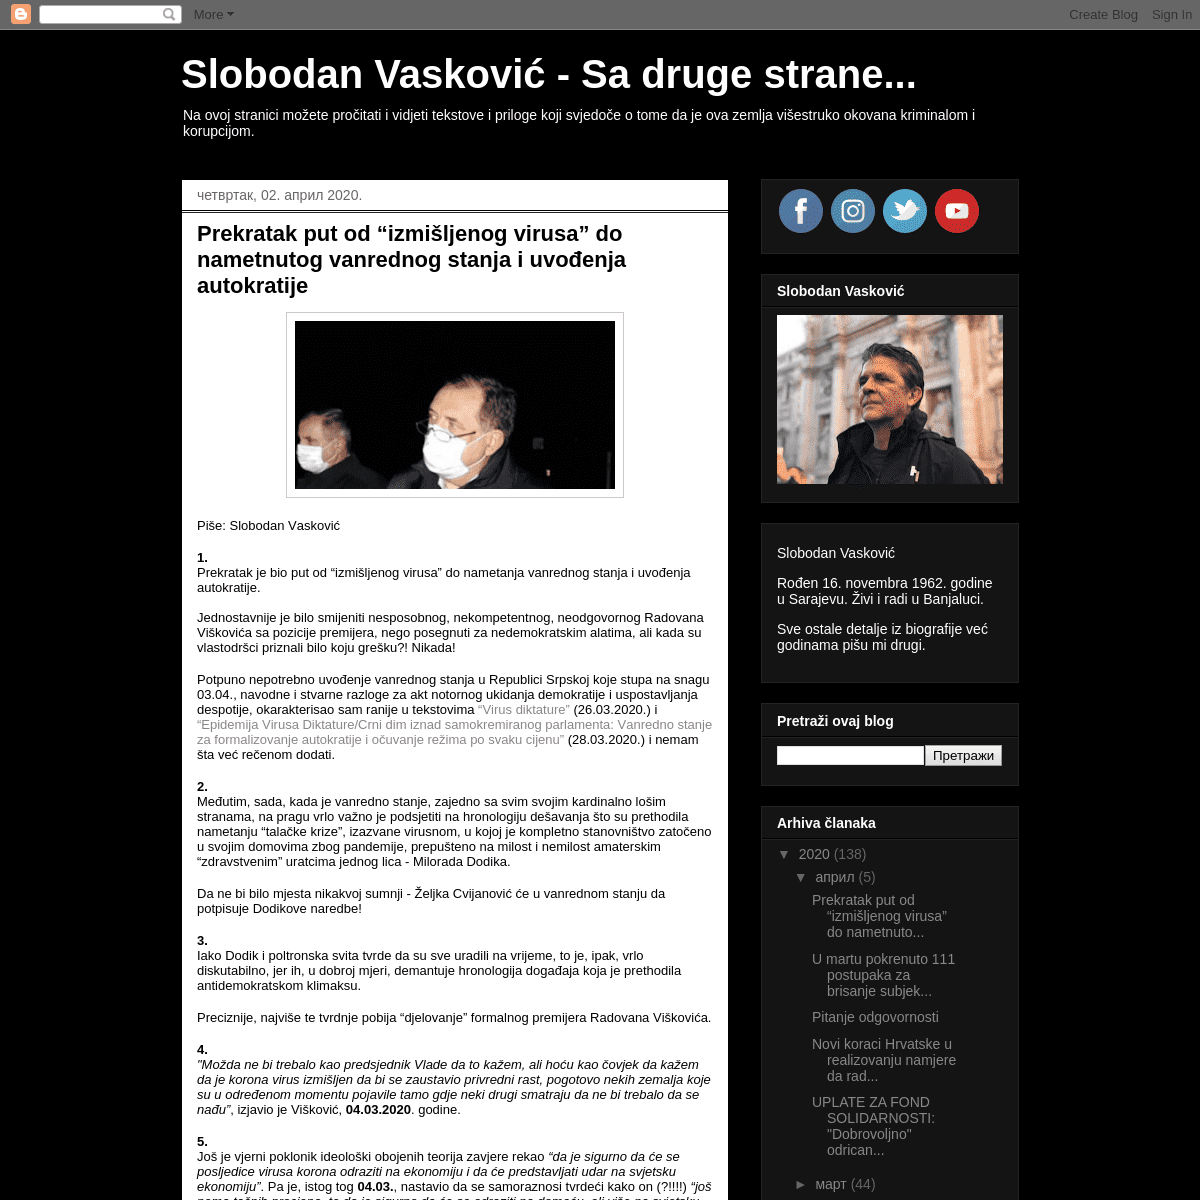 A complete backup of slobodanvaskovic.blogspot.com